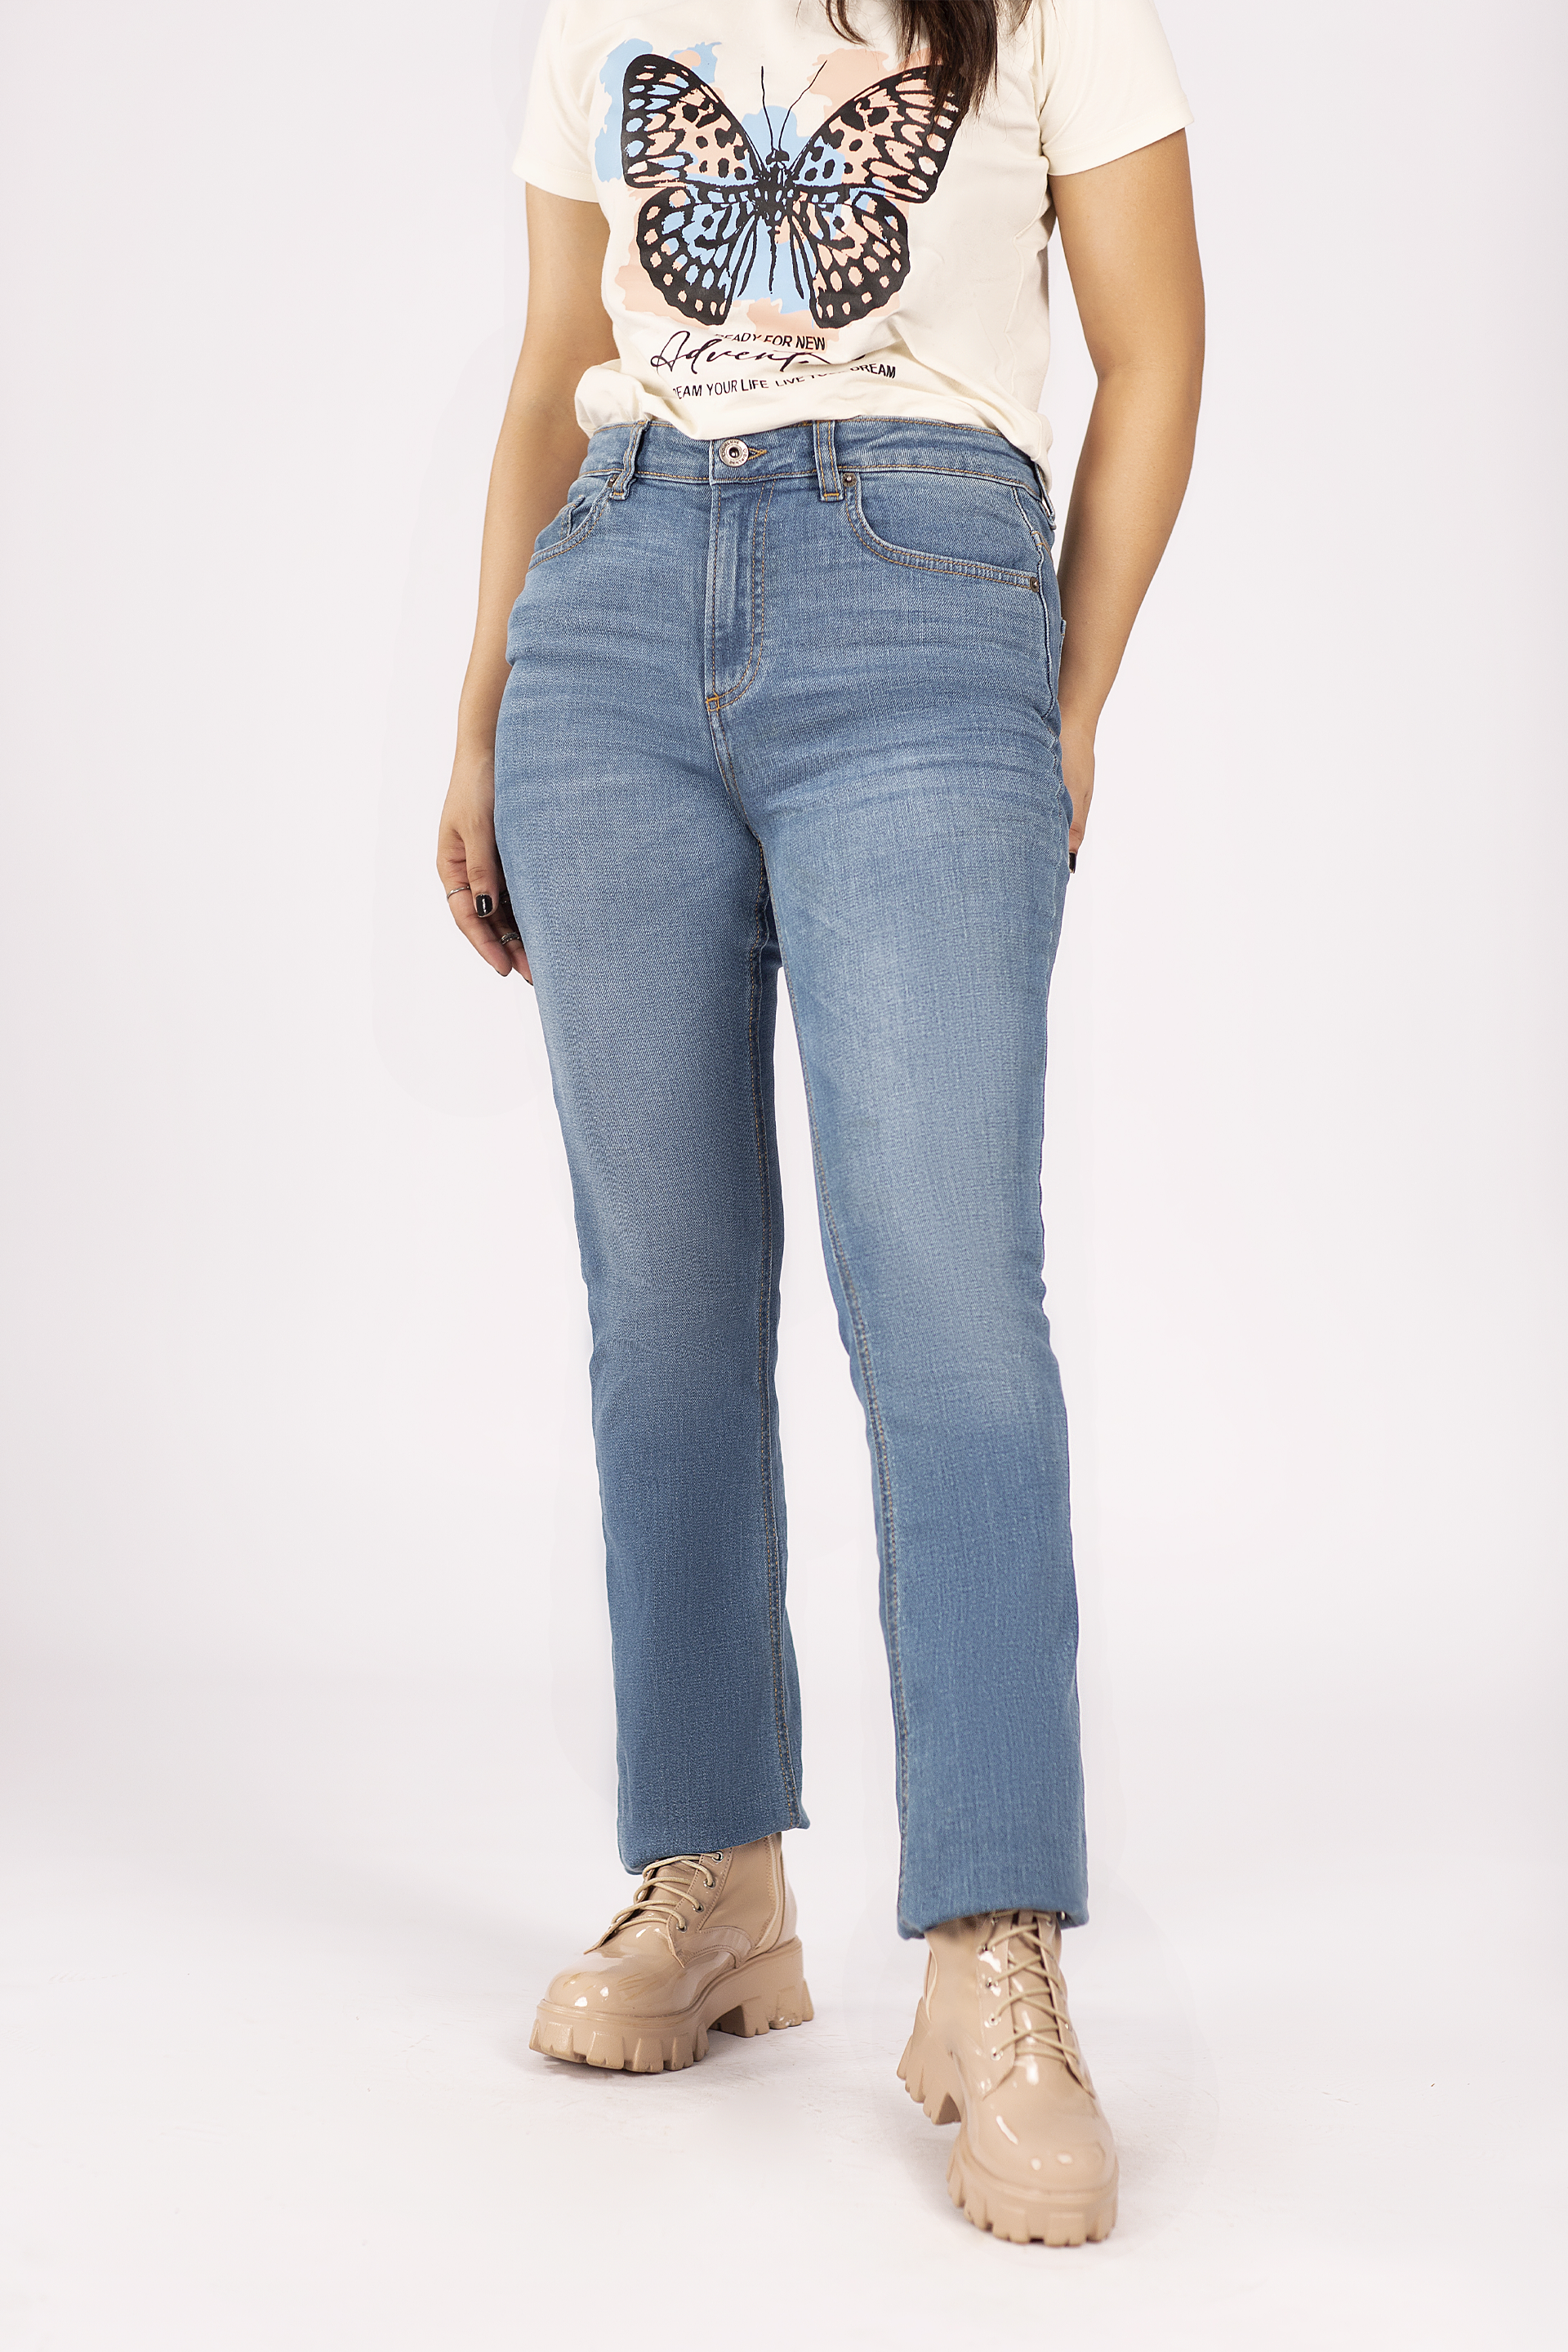 V-Girl Skinny Women Dark Blue Jeans - Buy V-Girl Skinny Women Dark Blue  Jeans Online at Best Prices in India | Flipkart.com